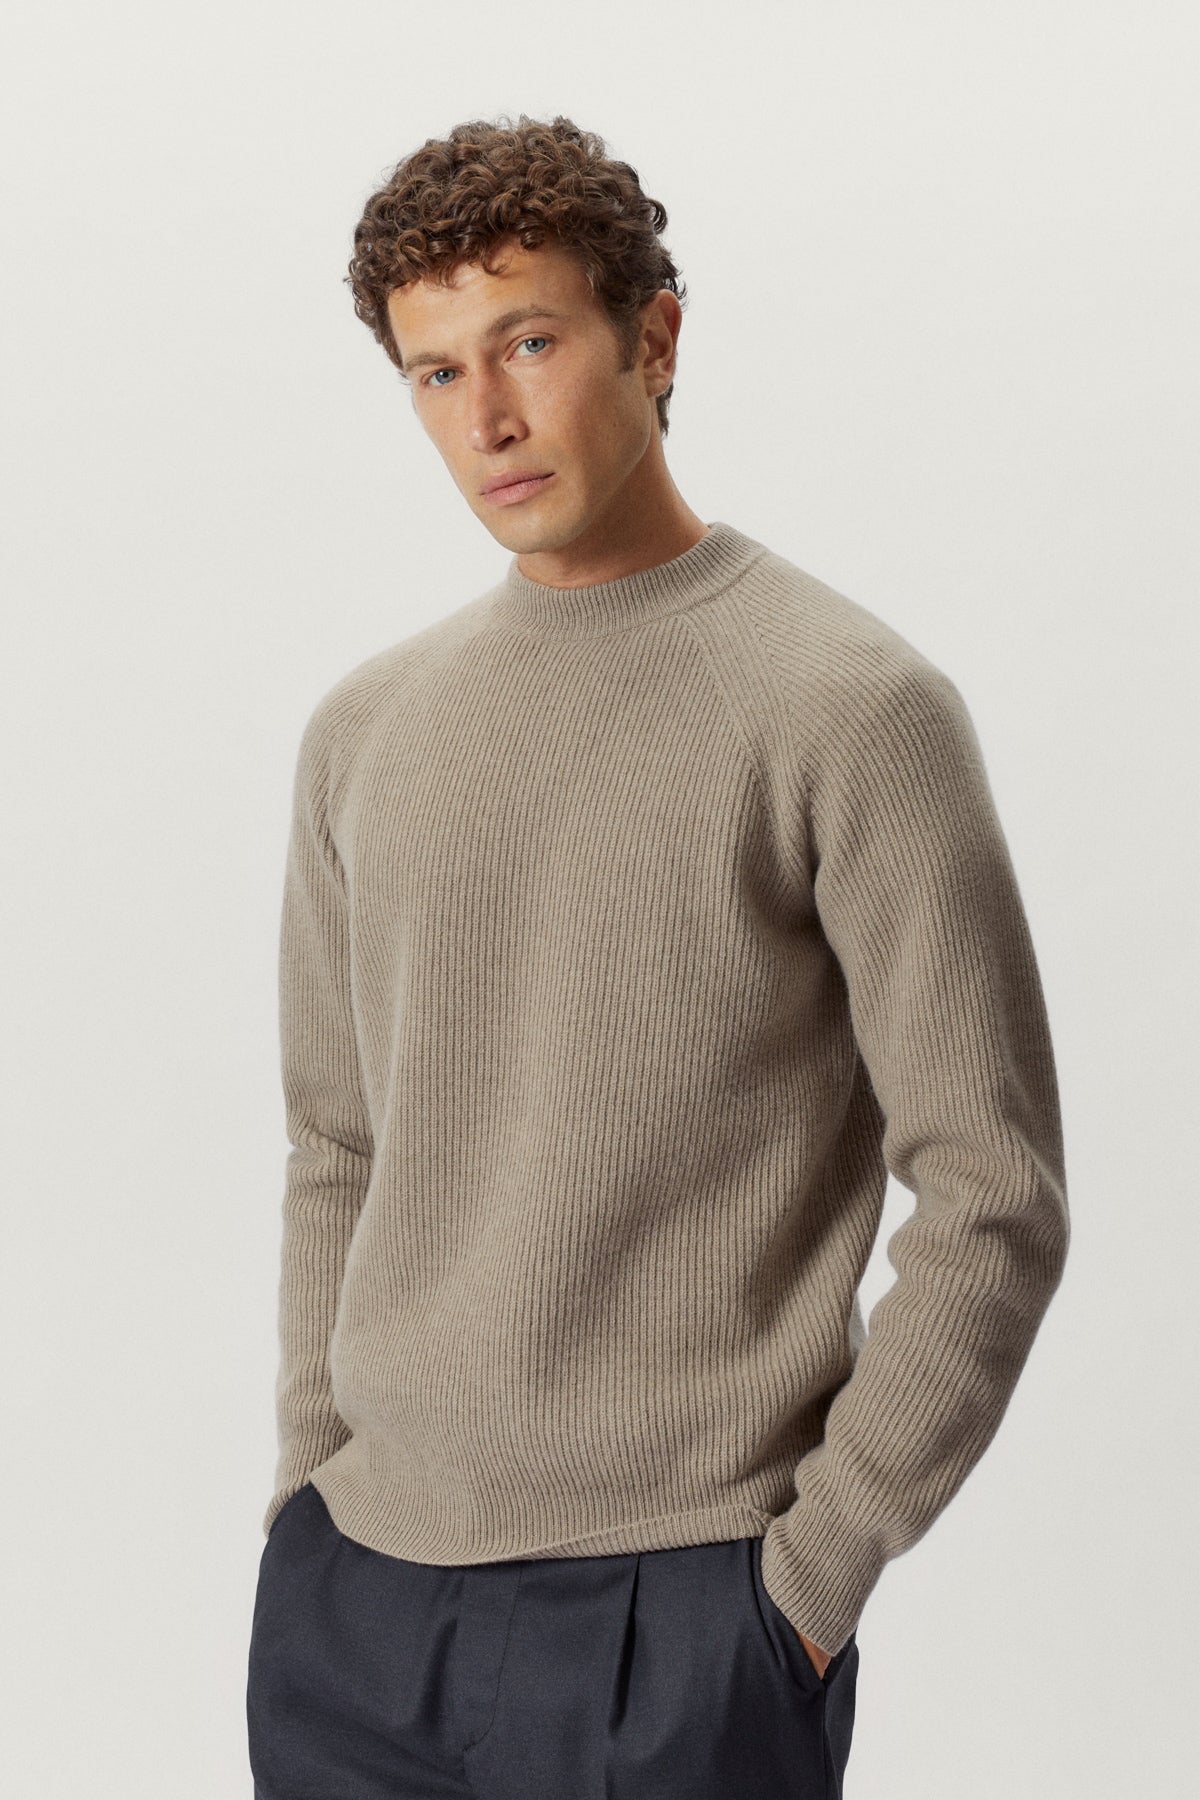 the woolen perkins sweater oak